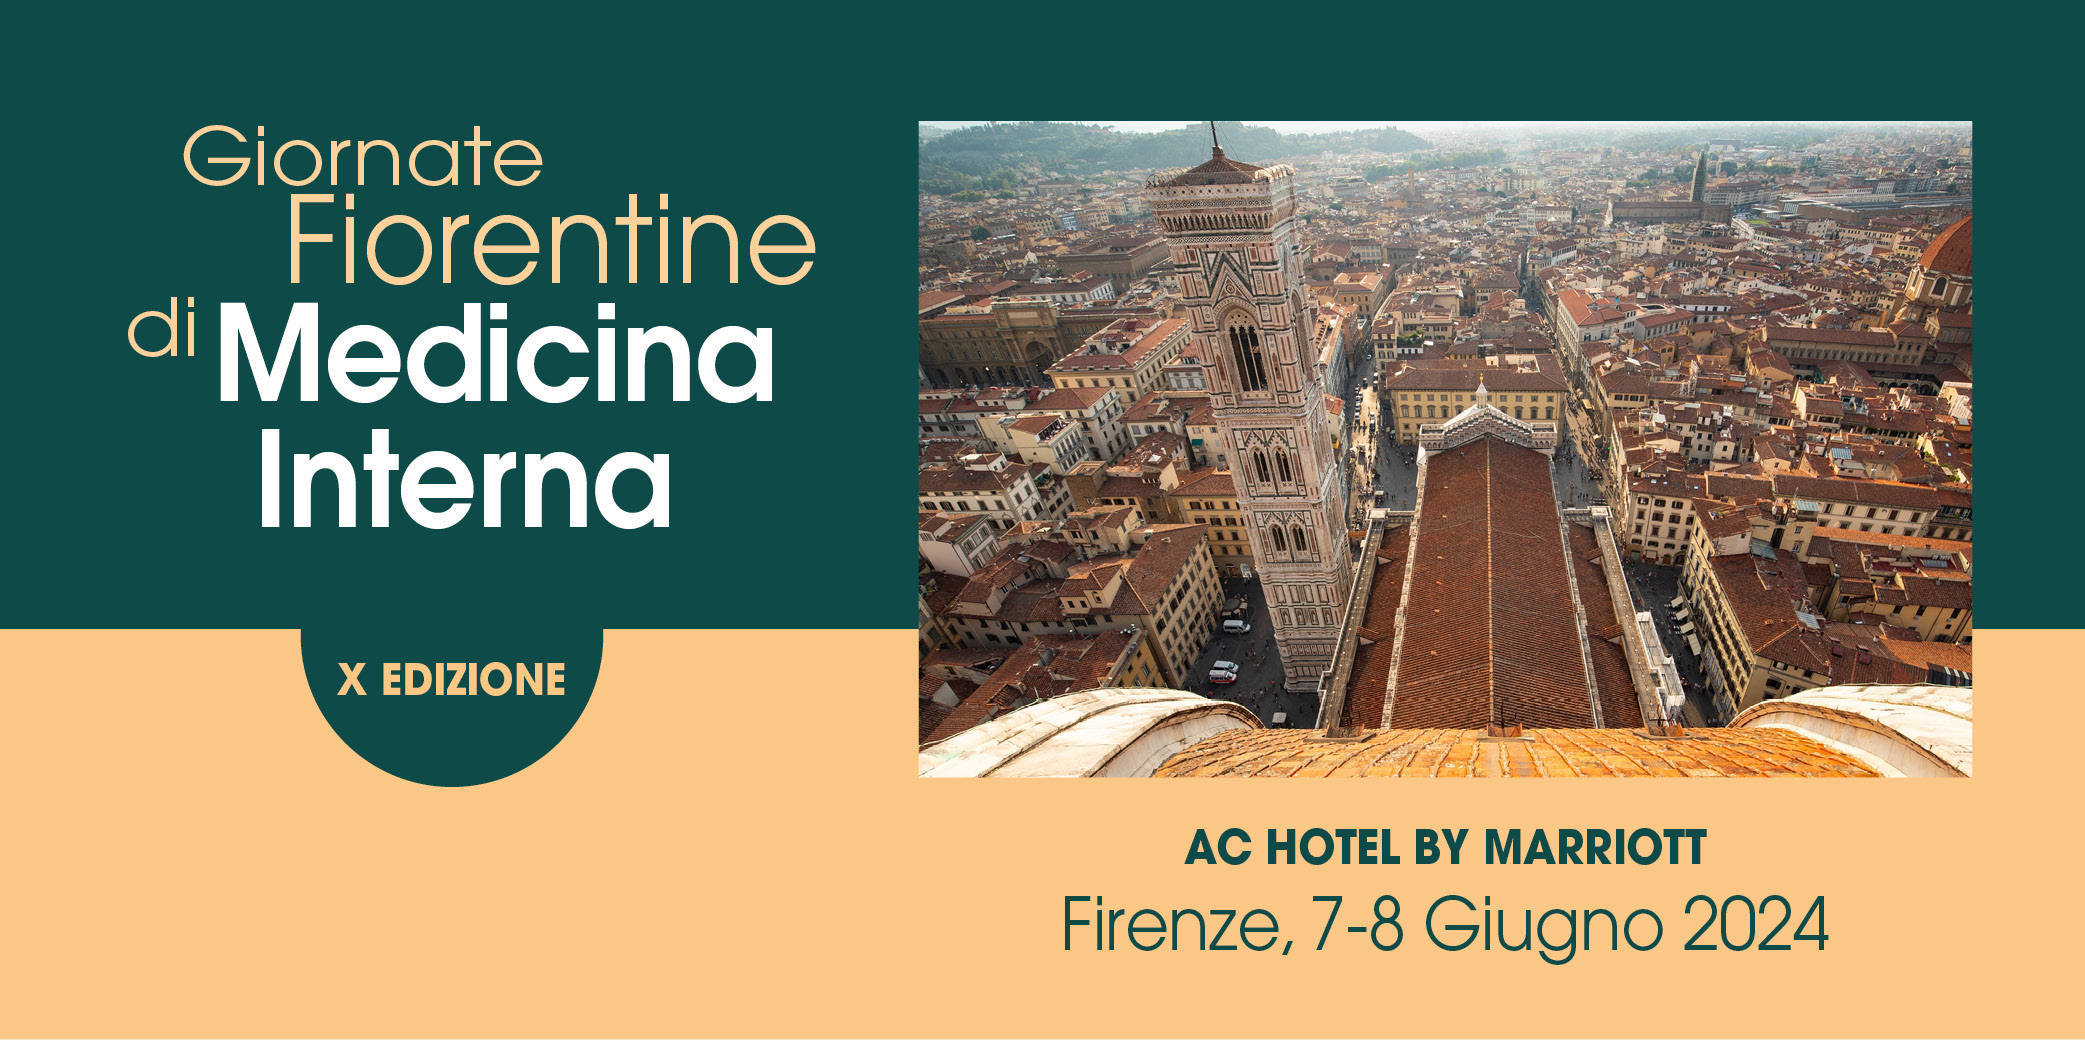 Convegno RES “Giornate Fiorentine di Medicina Interna”- X EDIZIONE – Firenze, 7-8 Giugno 2024